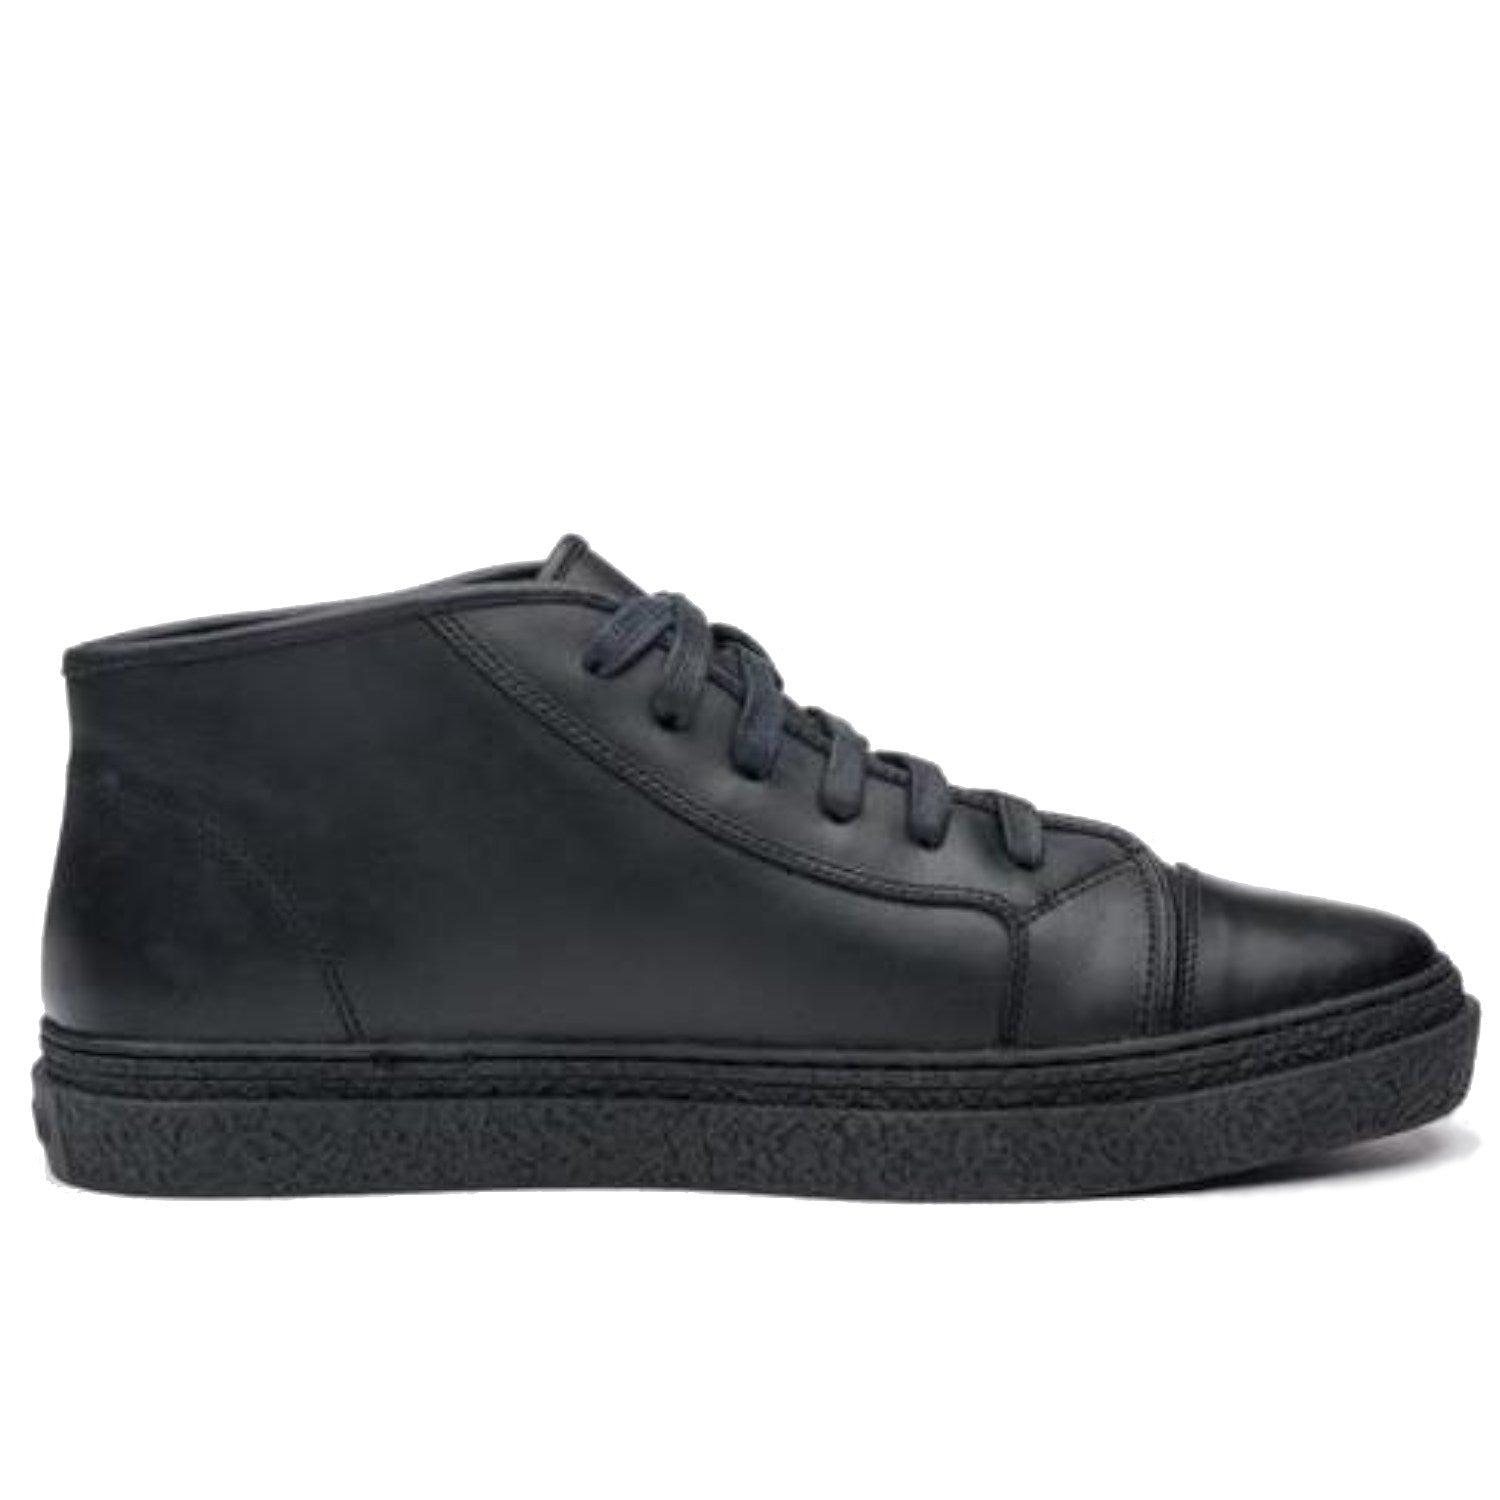 ONTO Kogi - Black Leather Sneaker